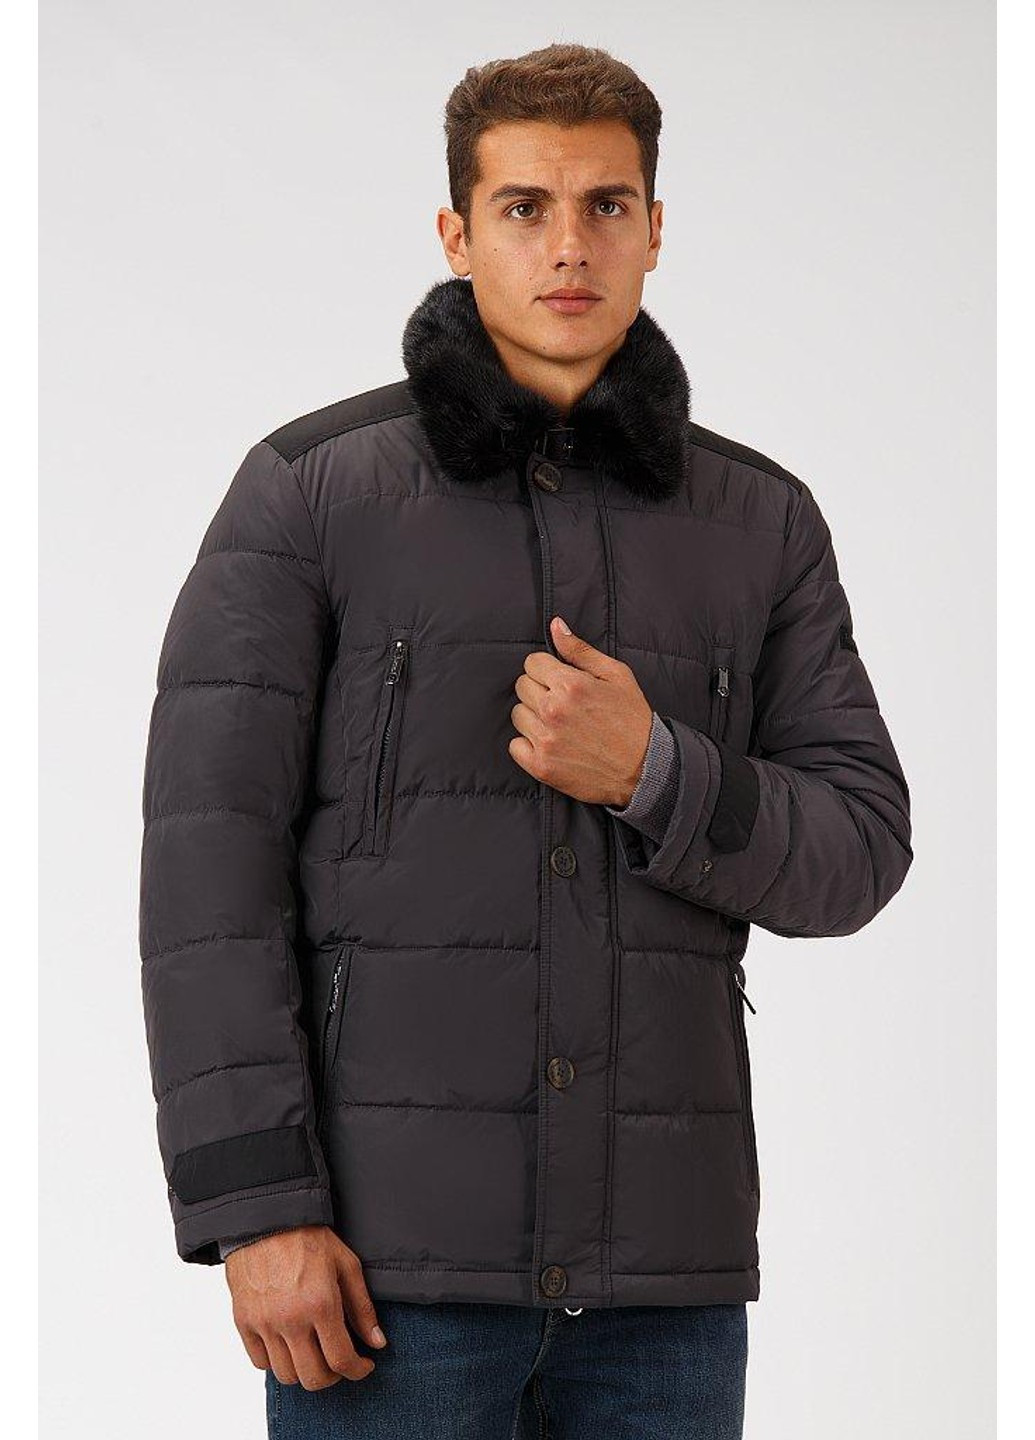 Темно-серая зимняя зимняя куртка a18-21009-202 Finn Flare